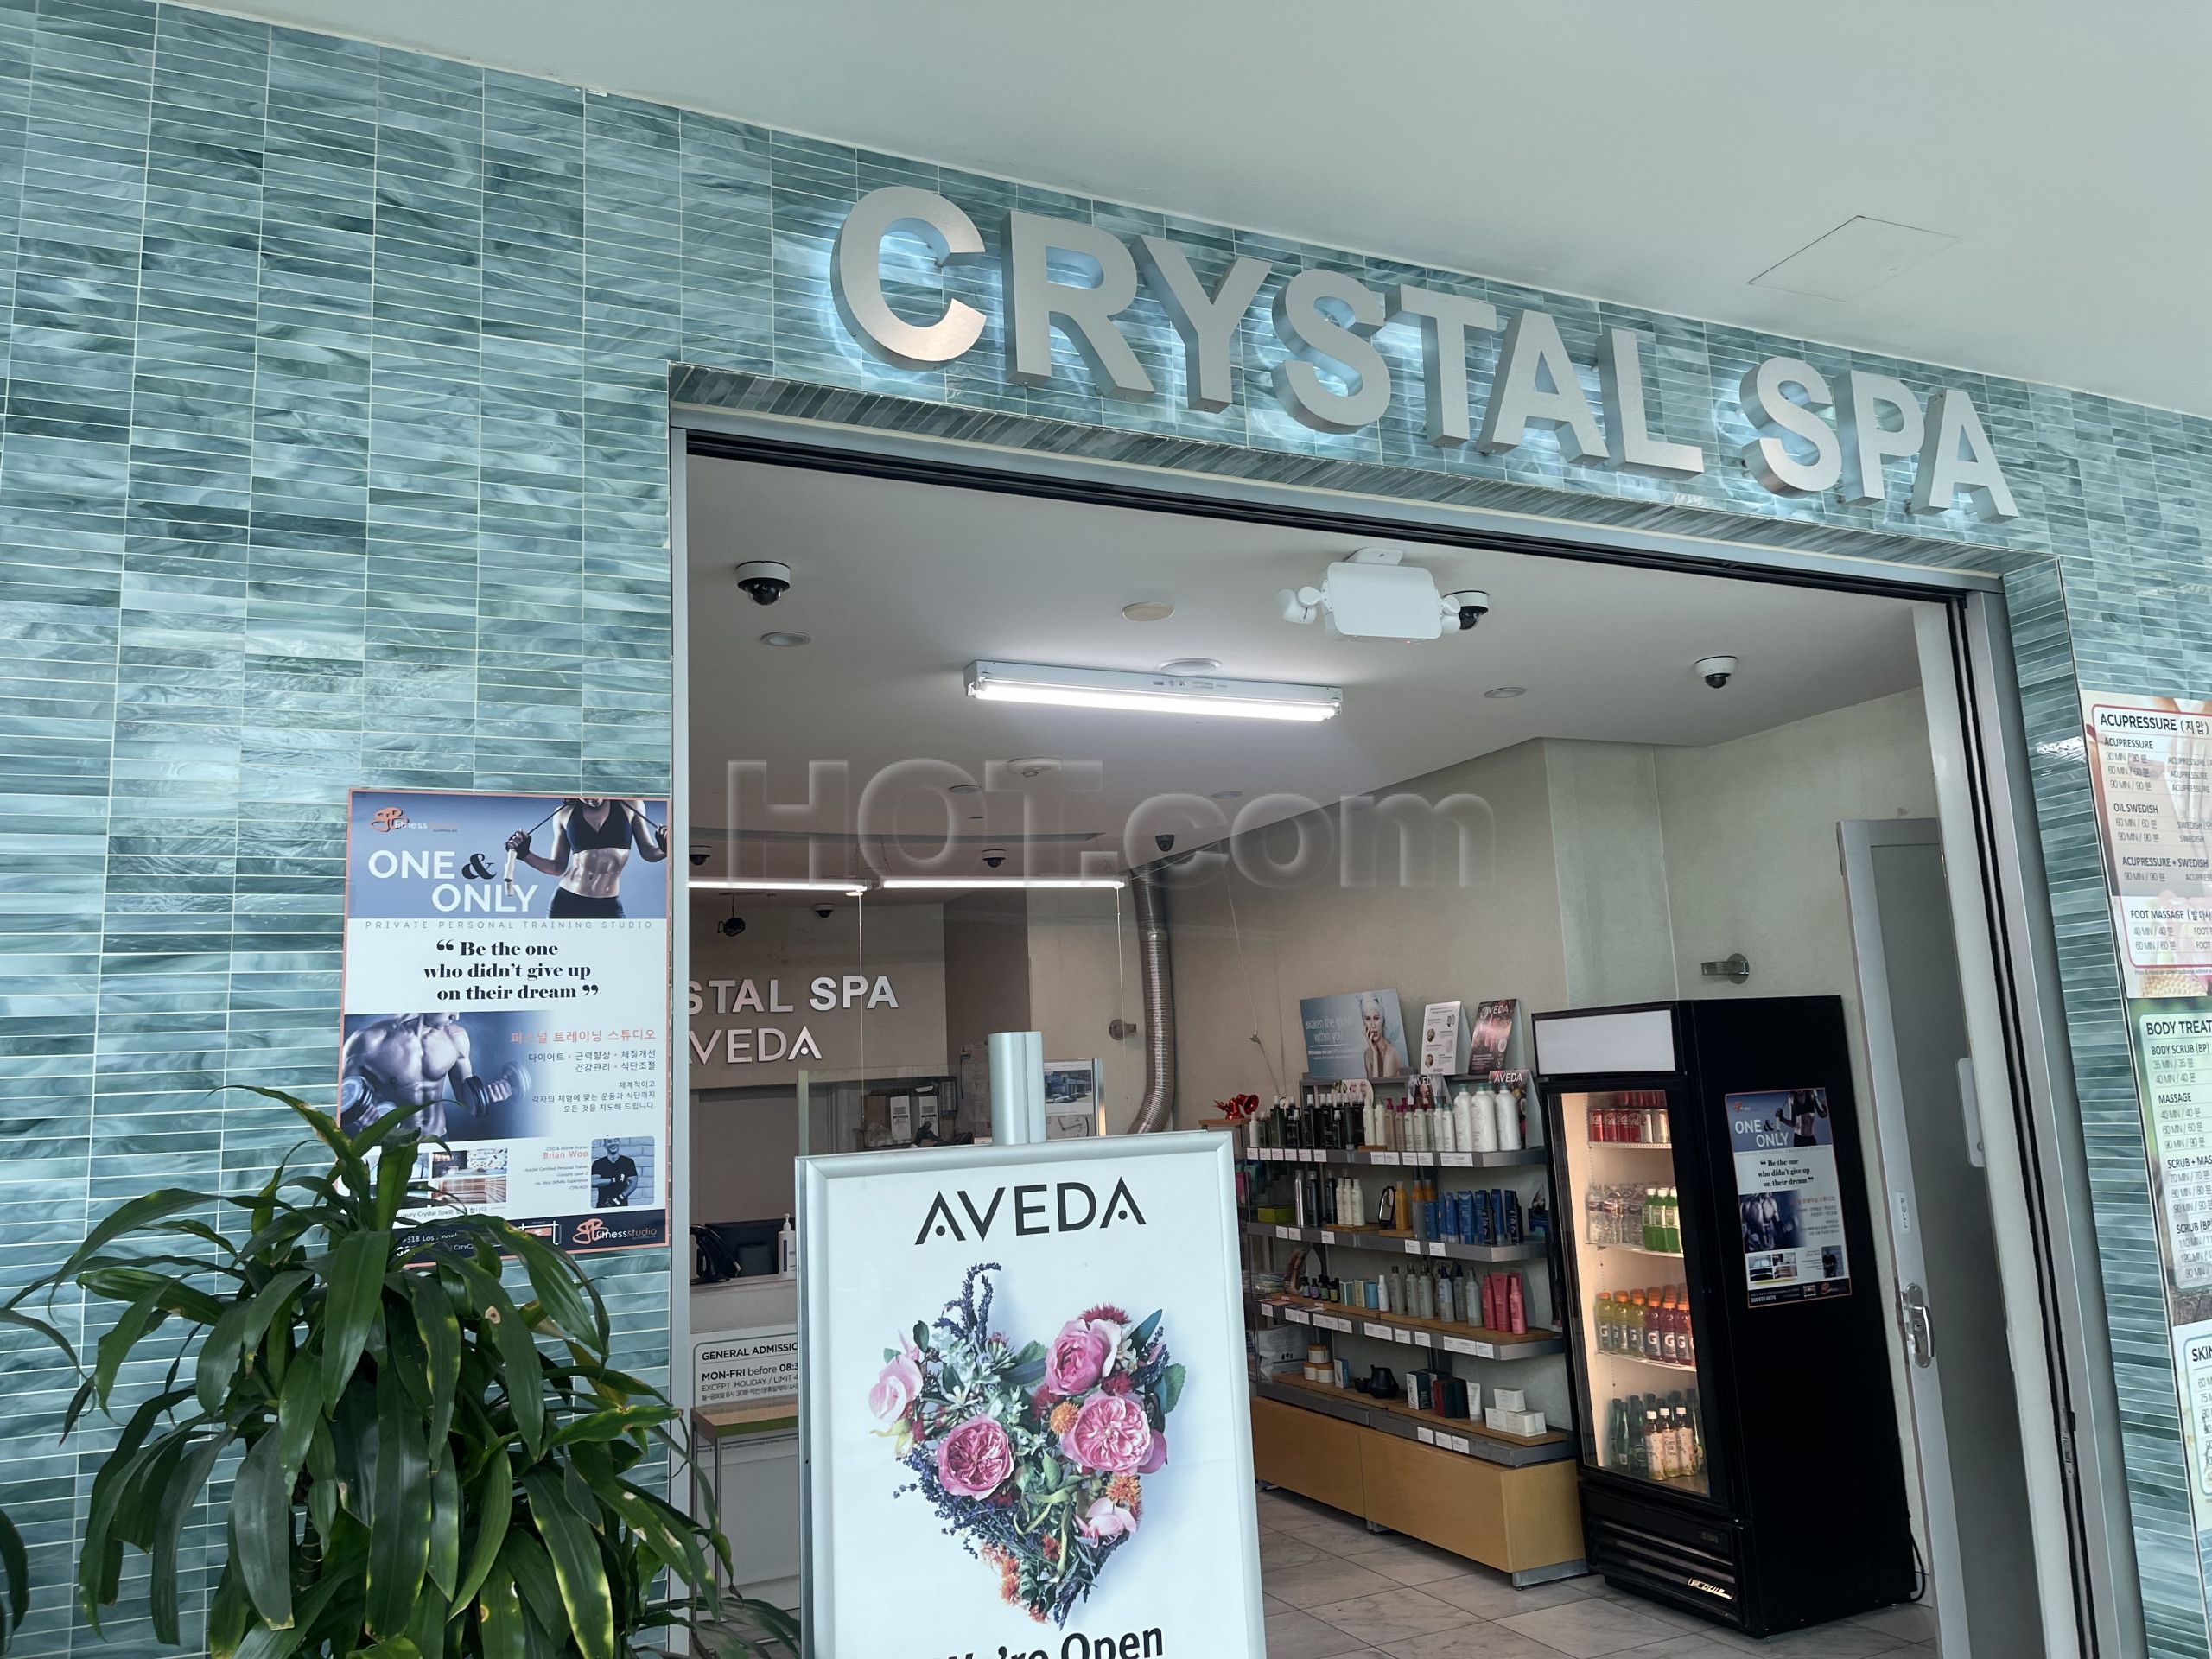 Los Angeles, California Crystal Spa